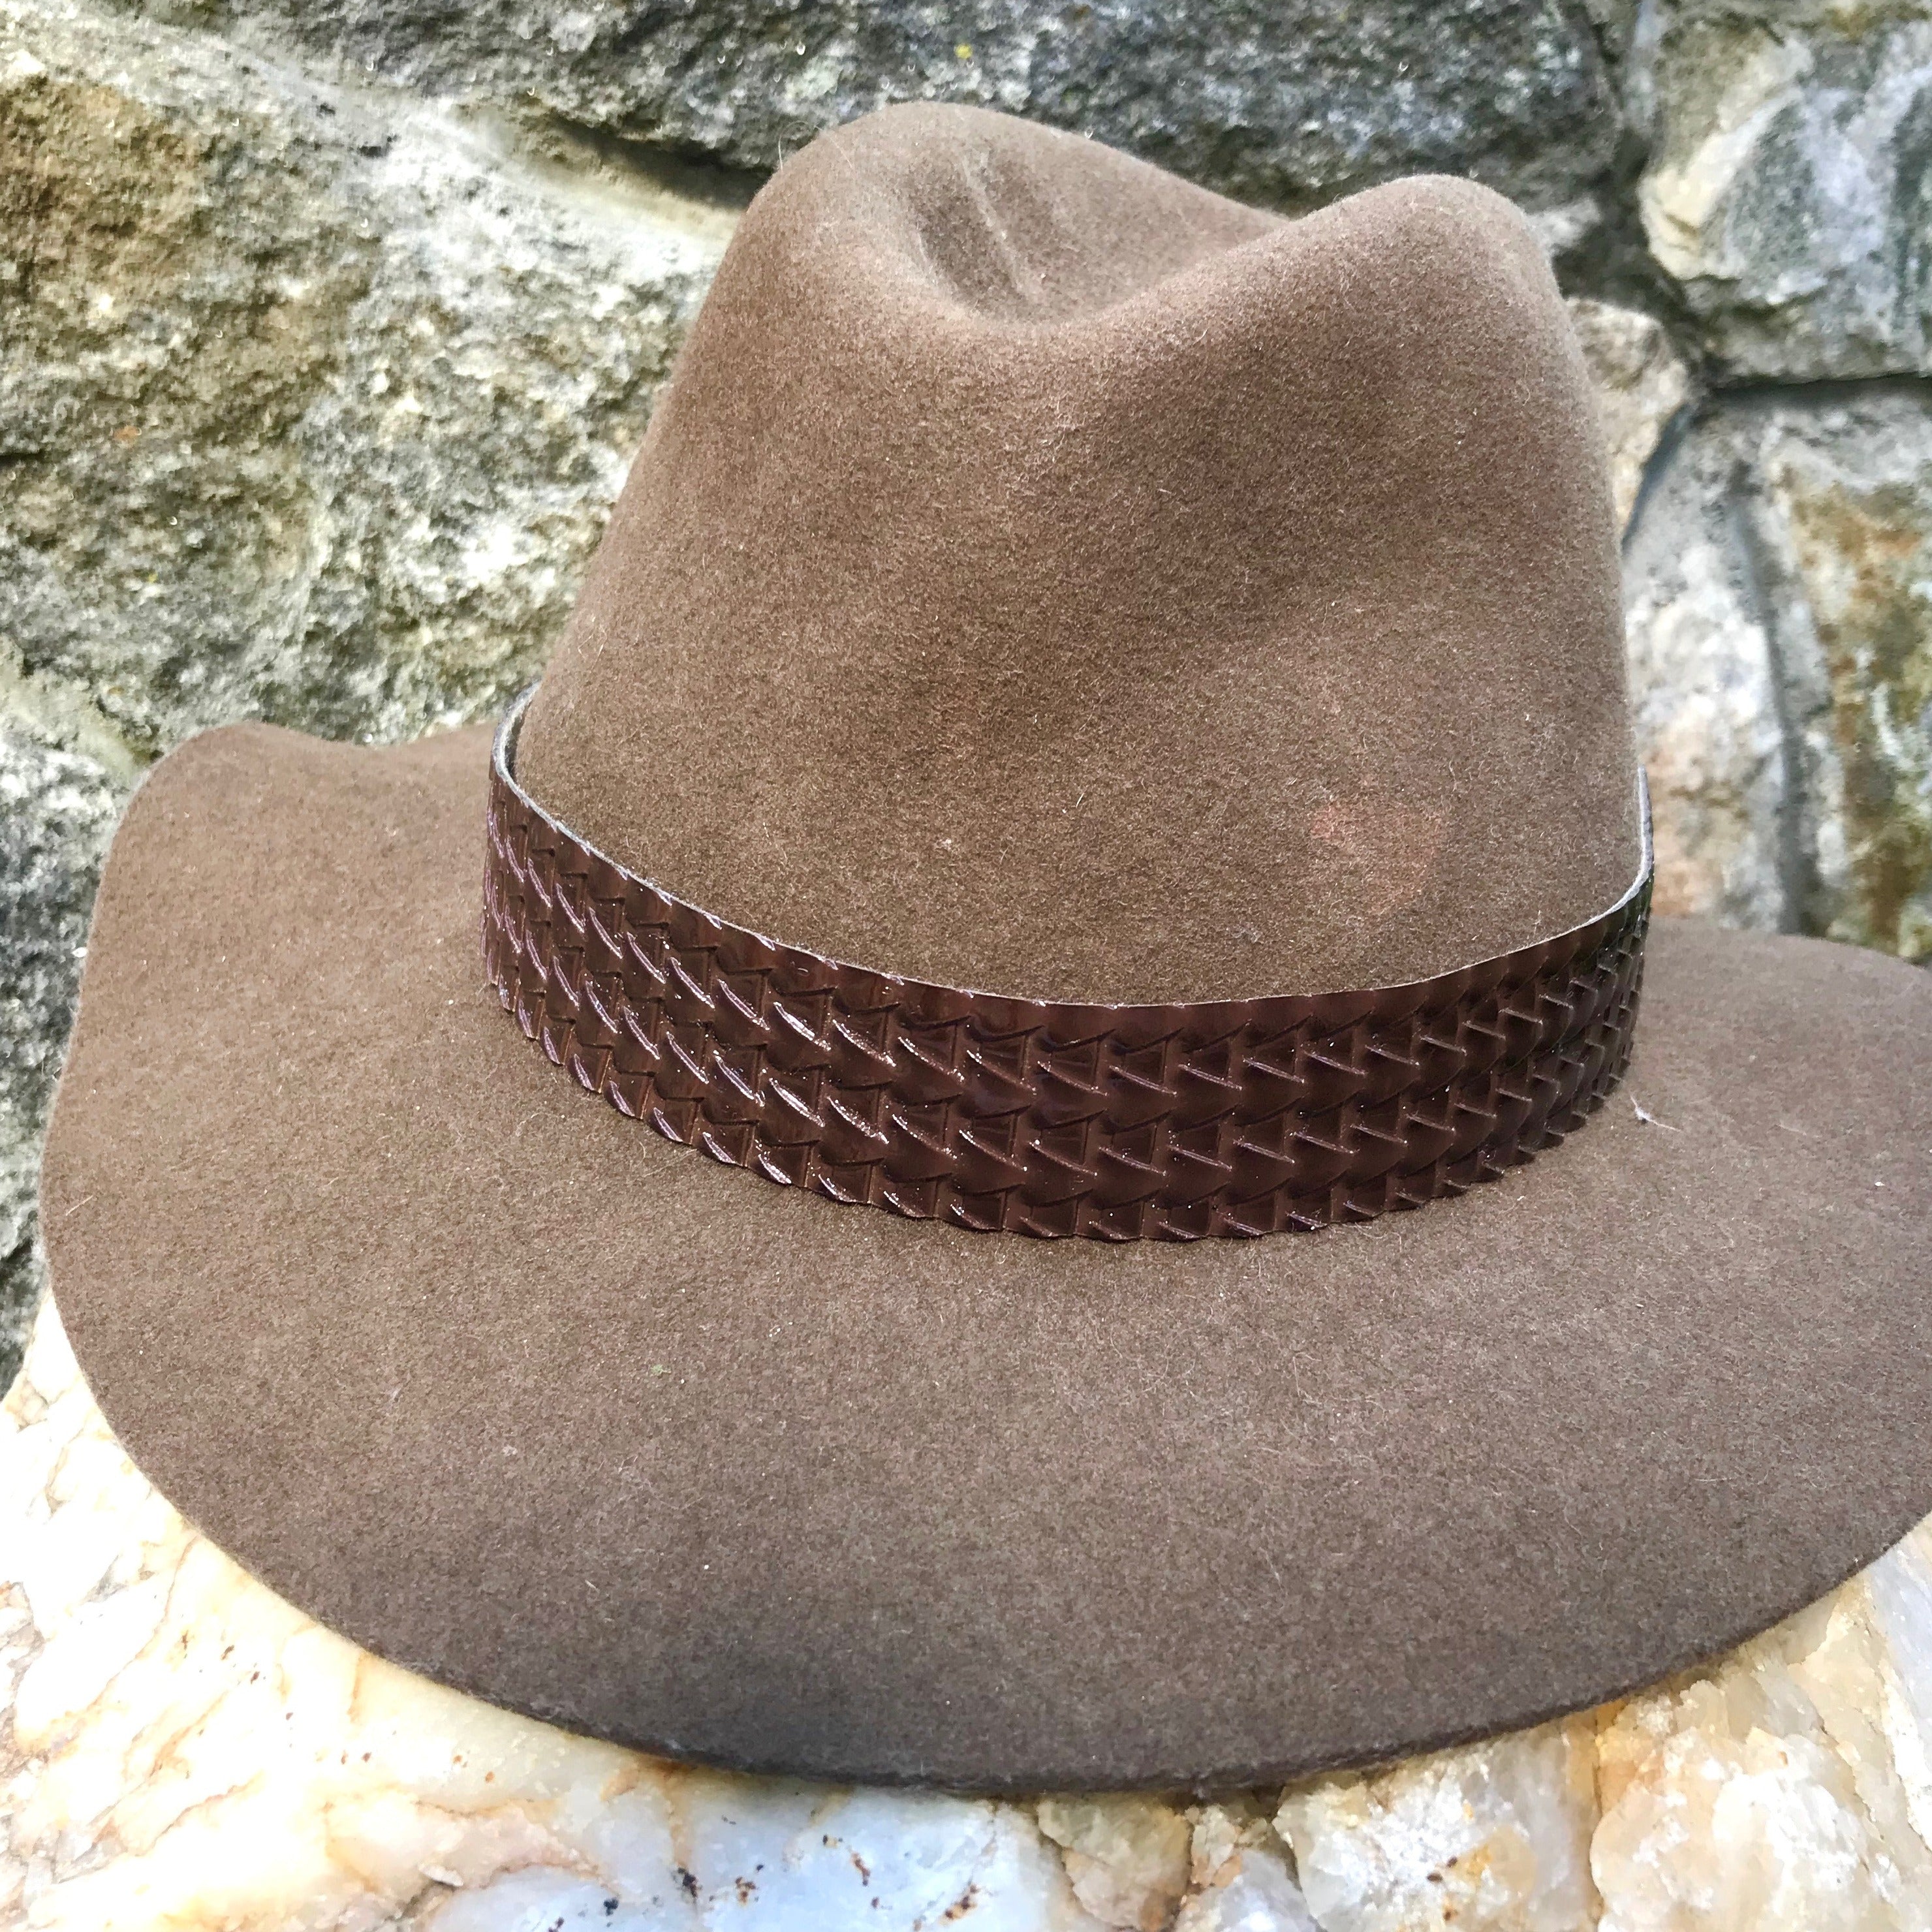 Brown Wool Felt Hat - Brown Embossed Leather